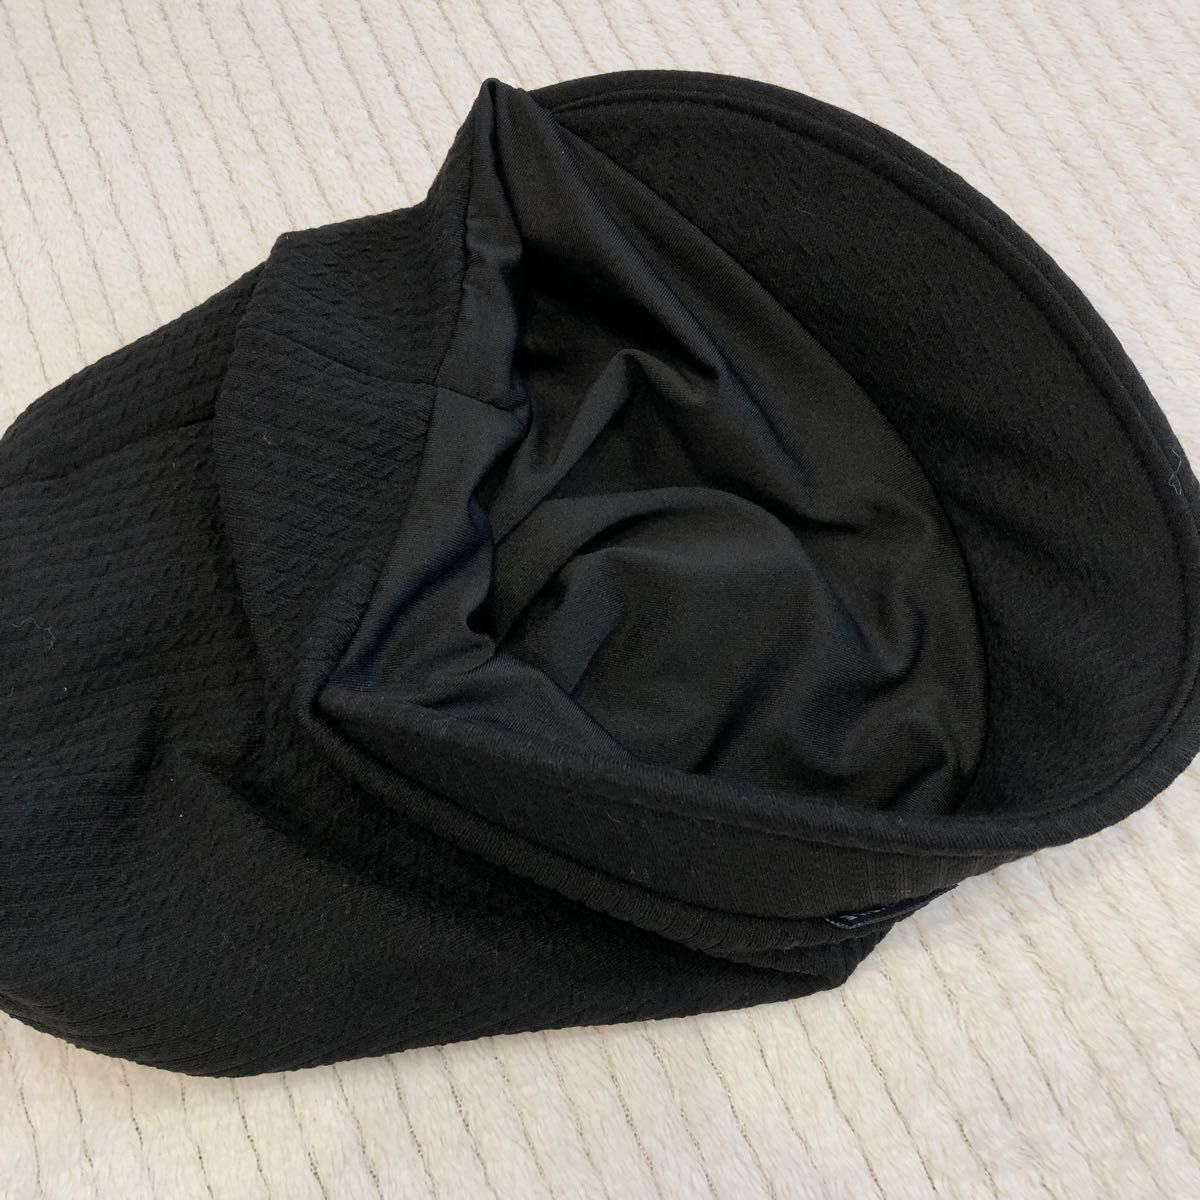 深め 深い キャスケット キャップ ハンチング 帽子 おしゃれ すっぽり 韓国  プレゼント 防寒 小顔 ブラック 黒  ニット帽